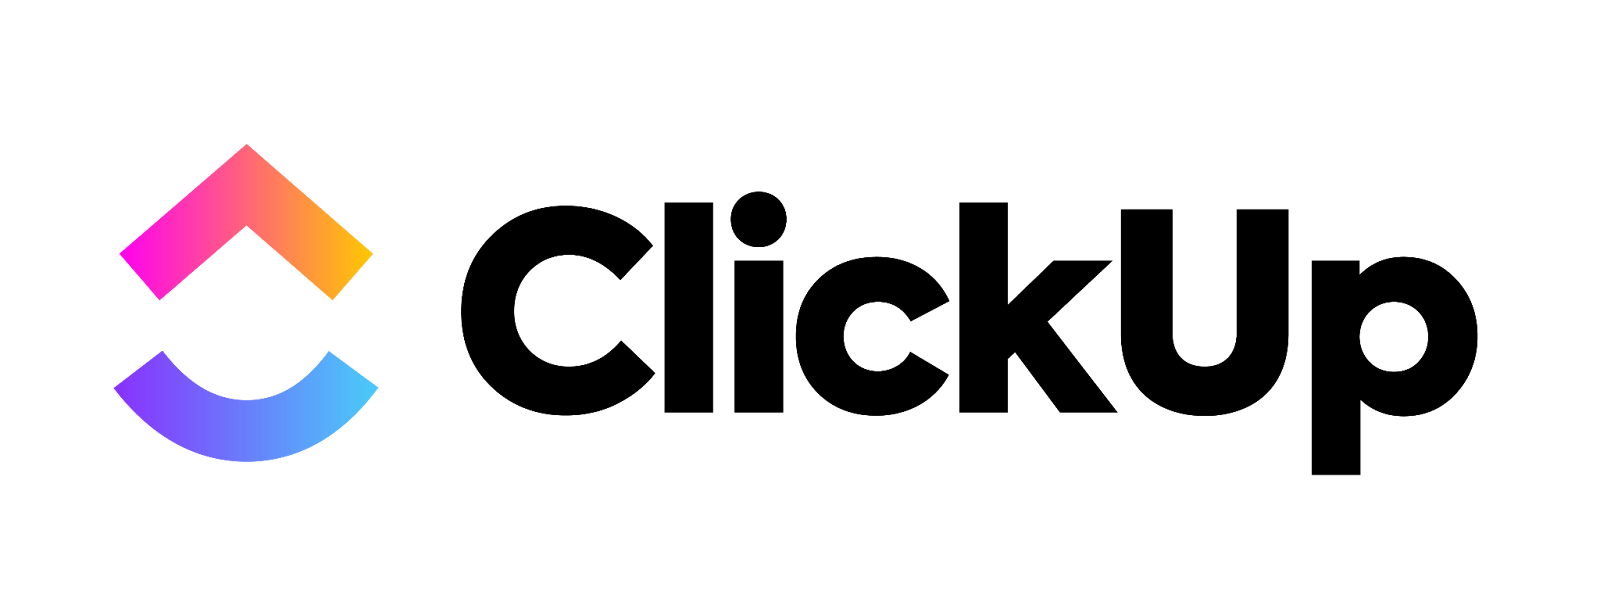 clickup's logo